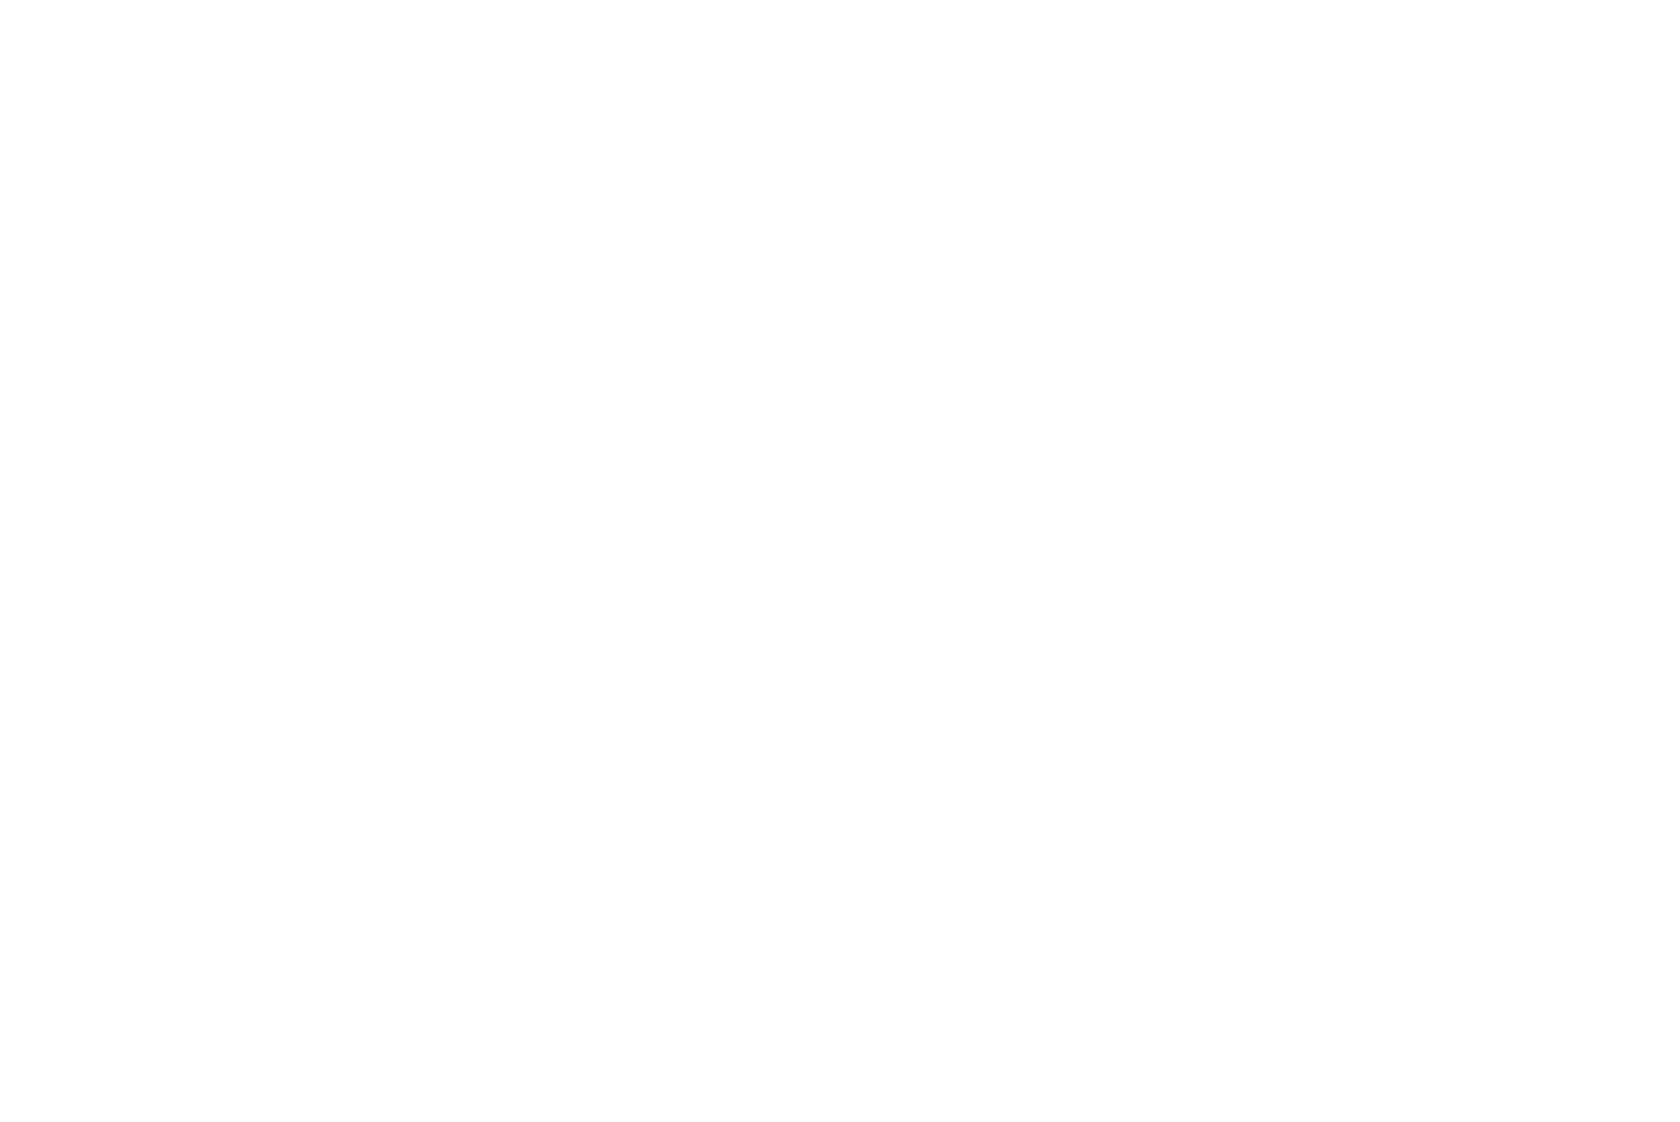 Метель, позёмка и солнце зимой в тундре на Ямале. Невысокие деревья Полярного Урала. Машкова Елена, Elena Mashkova — фотограф